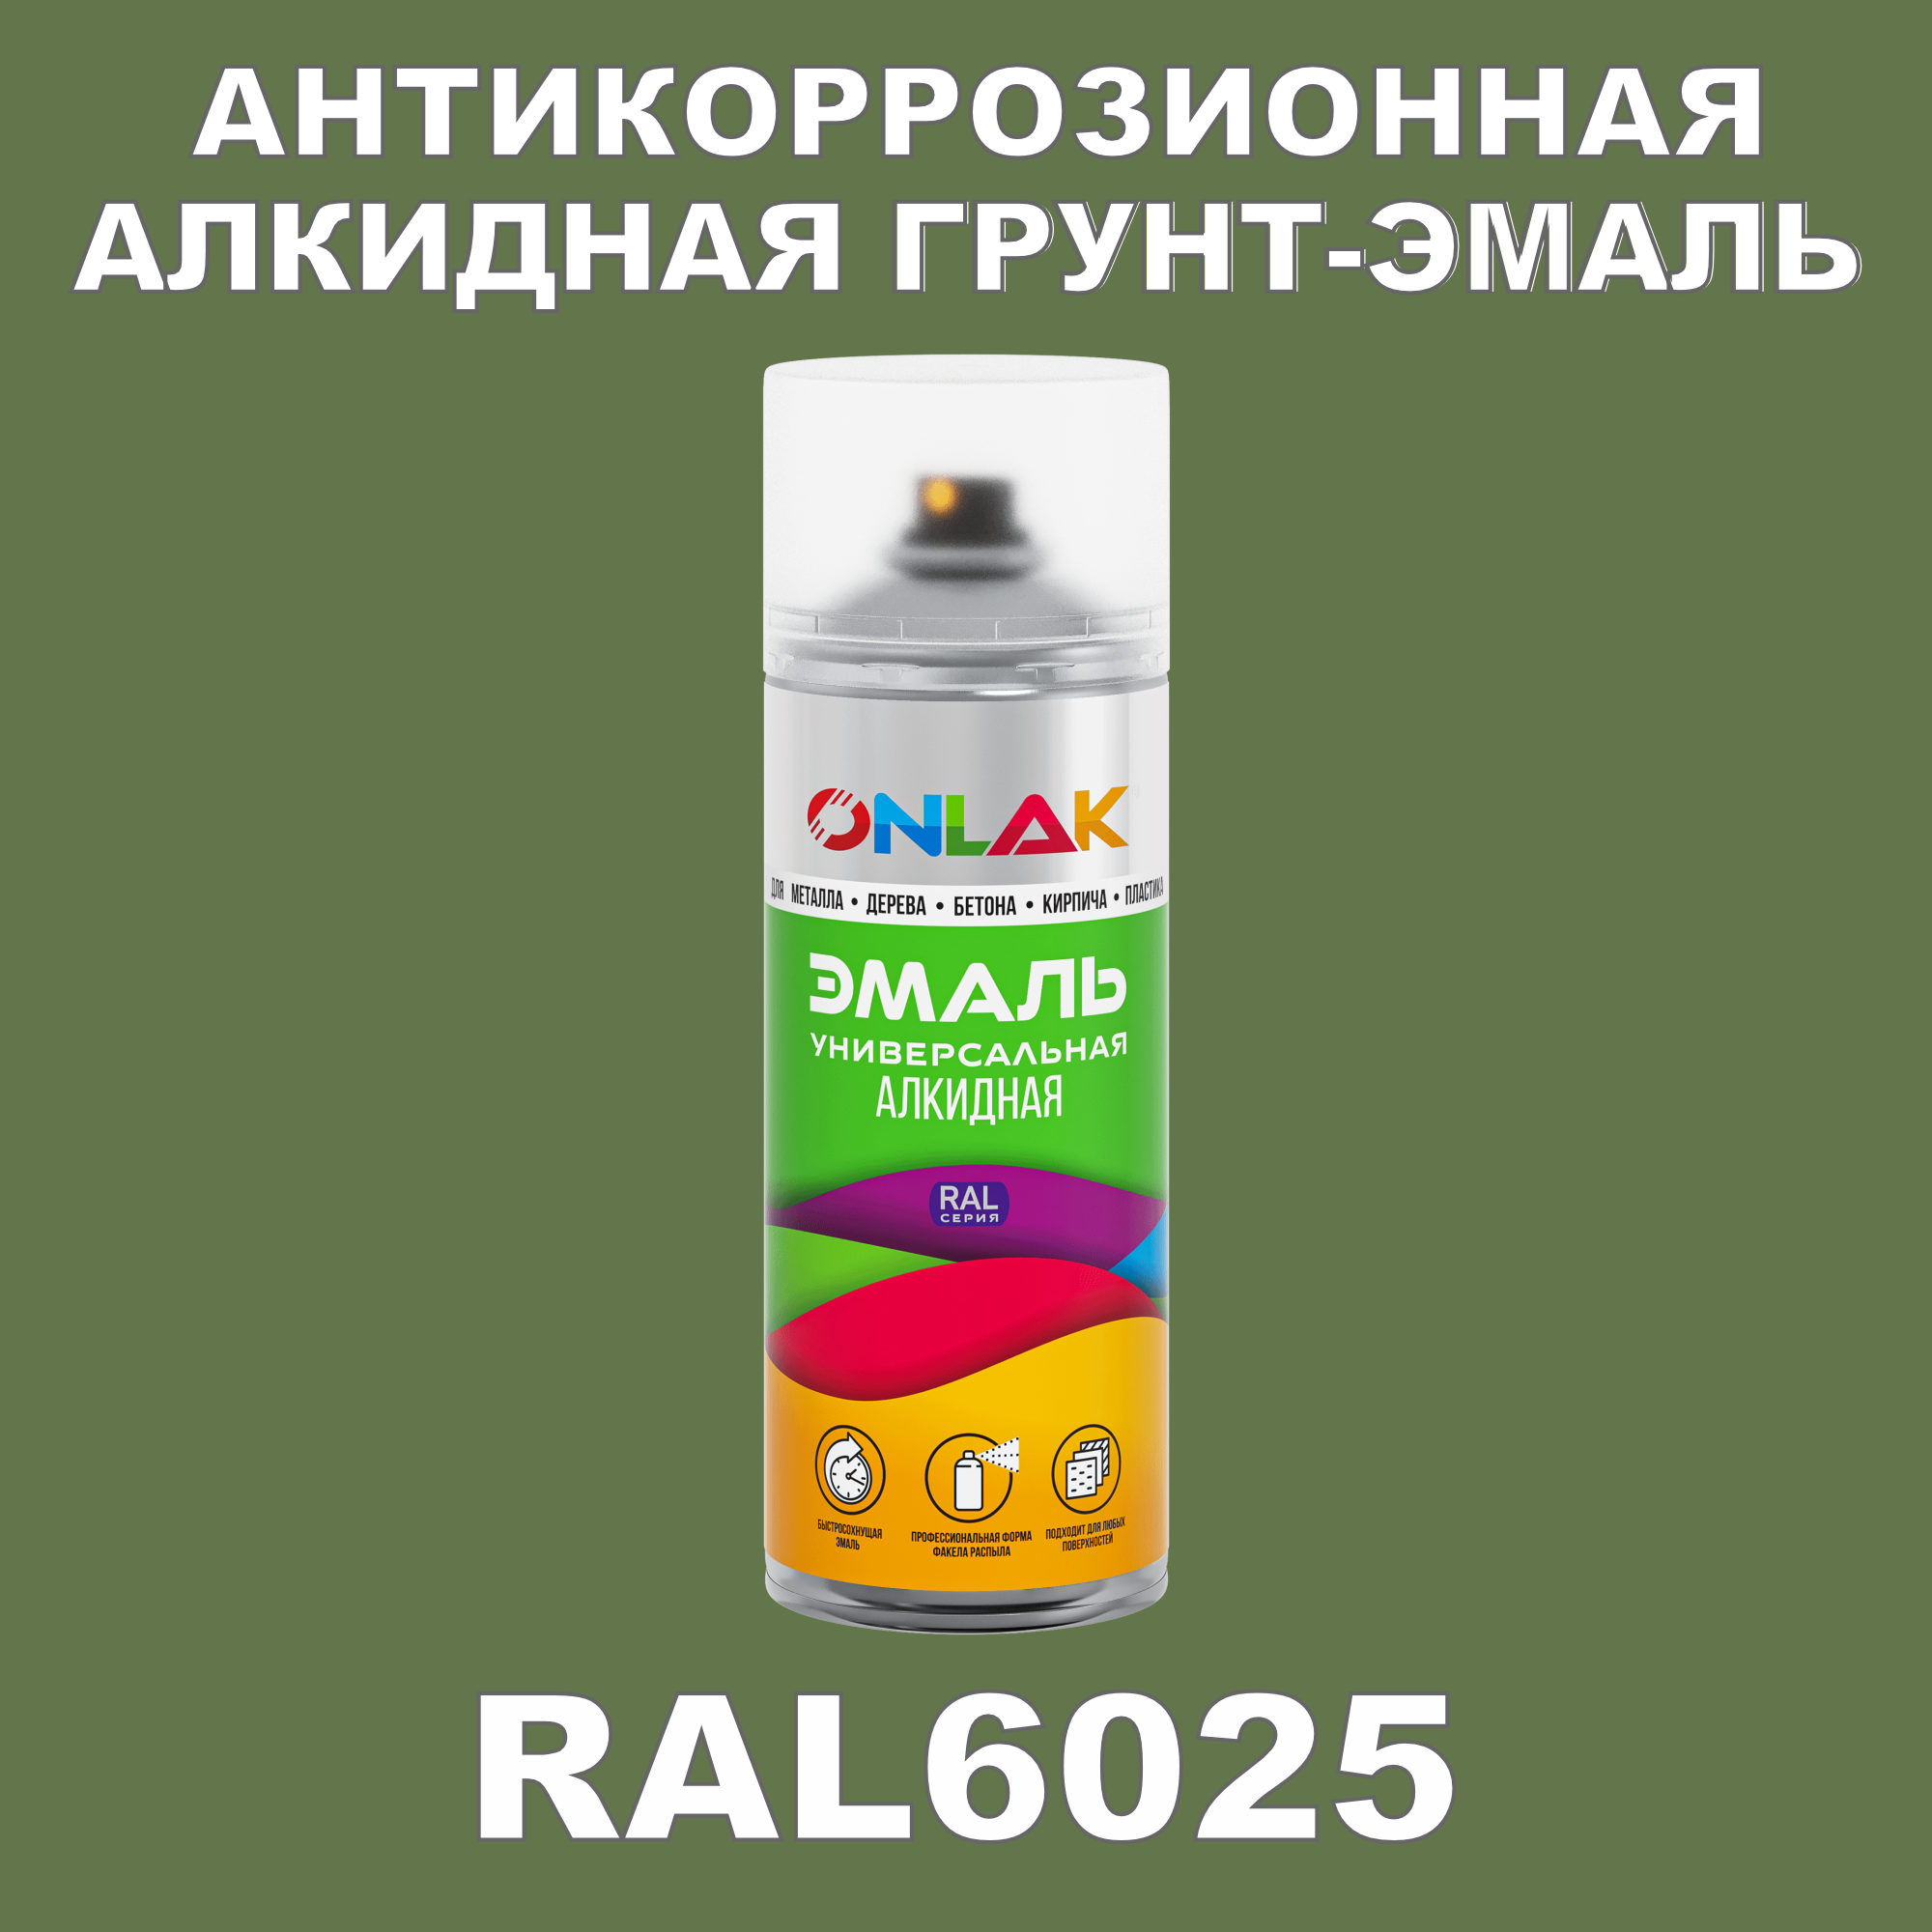 Антикоррозионная грунт-эмаль ONLAK RAL 6025,зеленый,674 мл